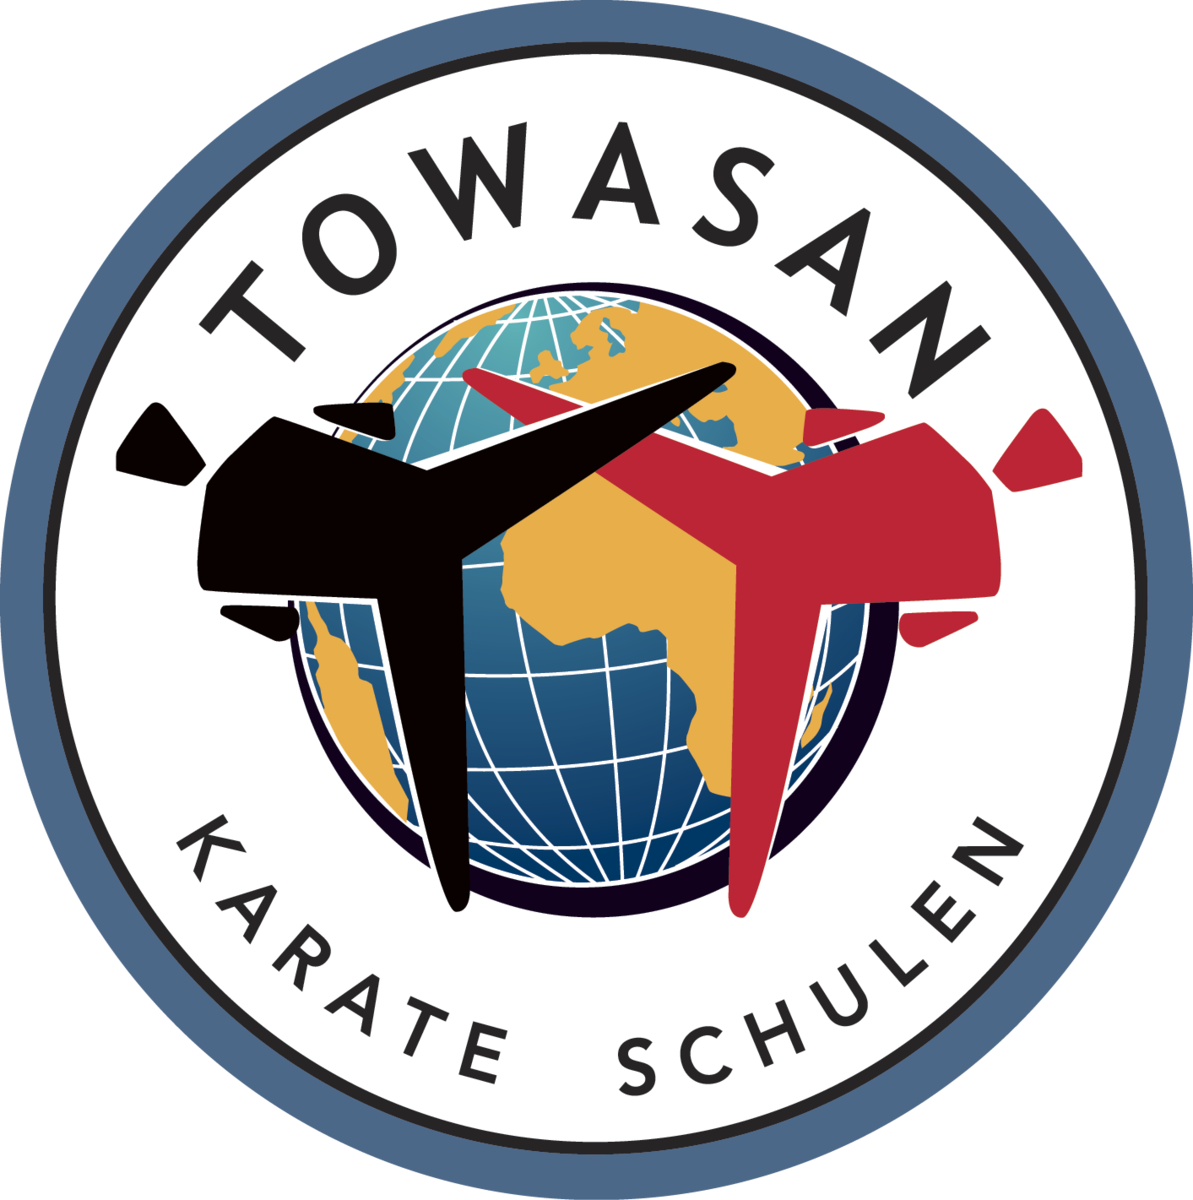 (c) Towasan-events.de